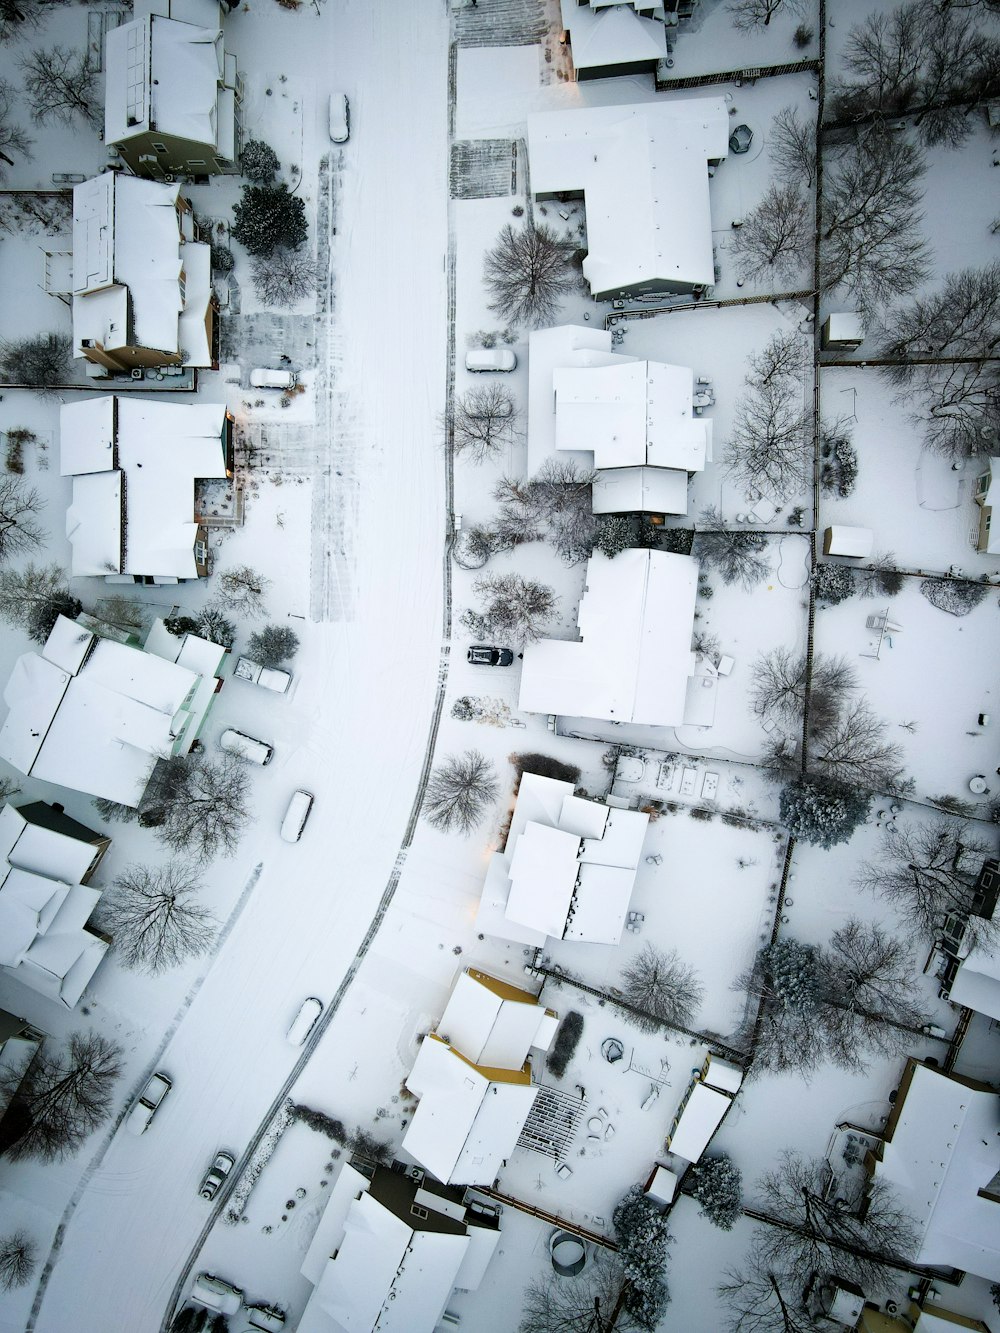 une vue aérienne d’un quartier enneigé